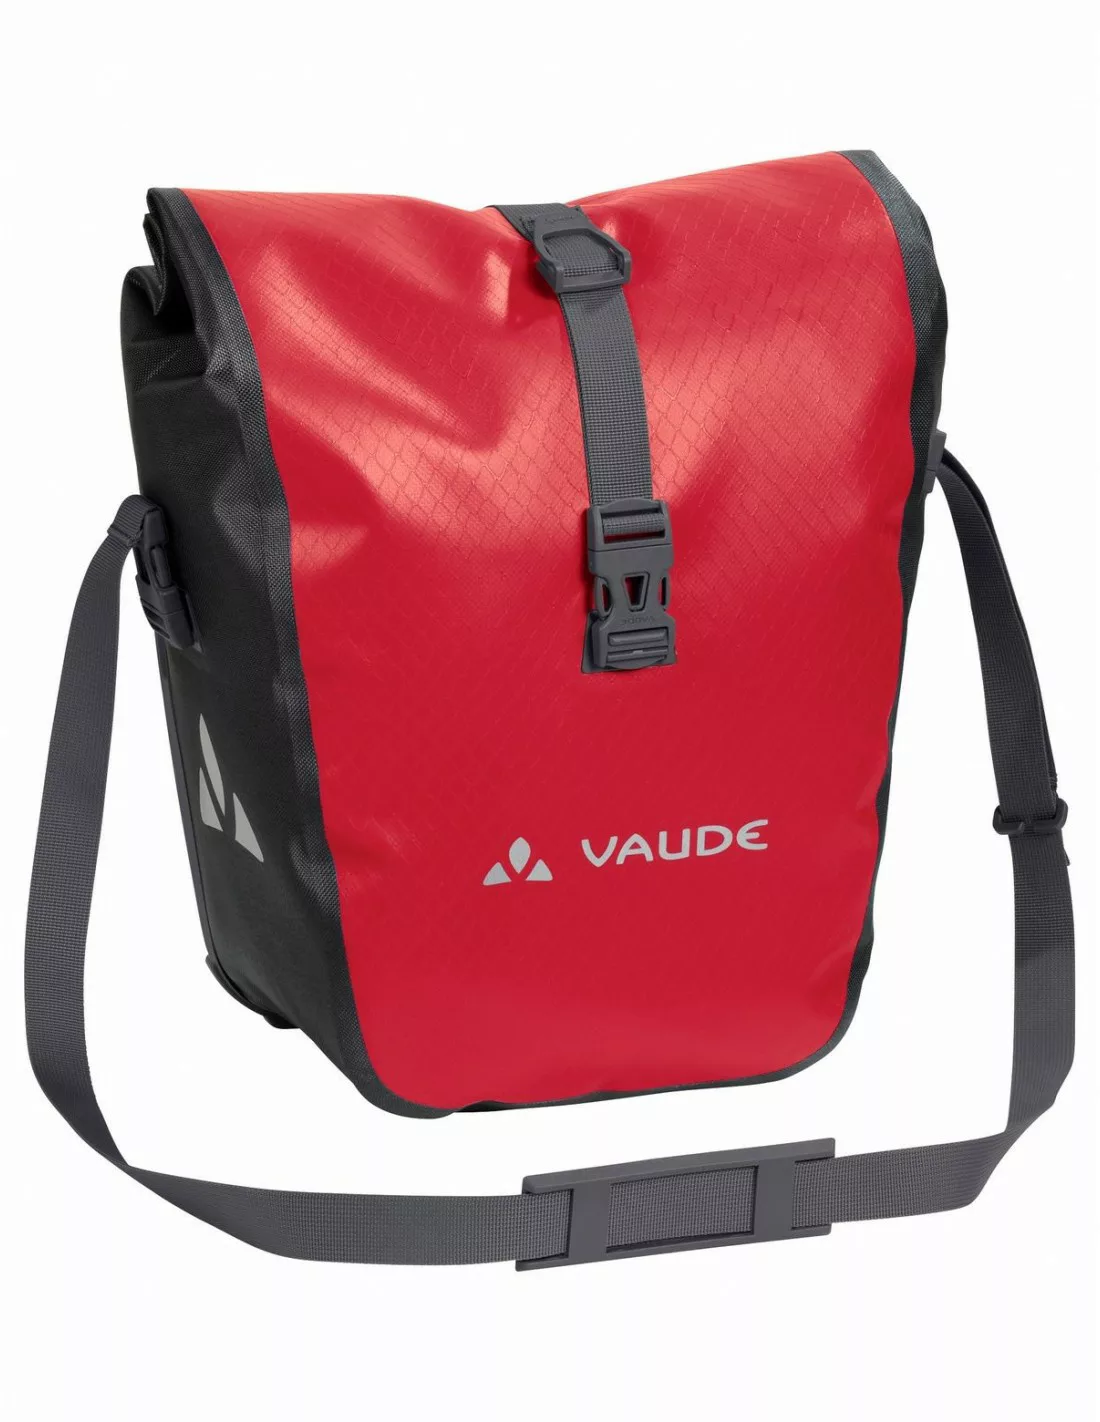 Vaude Aqua Front - Red Taschenvariante - Gepäckträgertaschen, günstig online kaufen